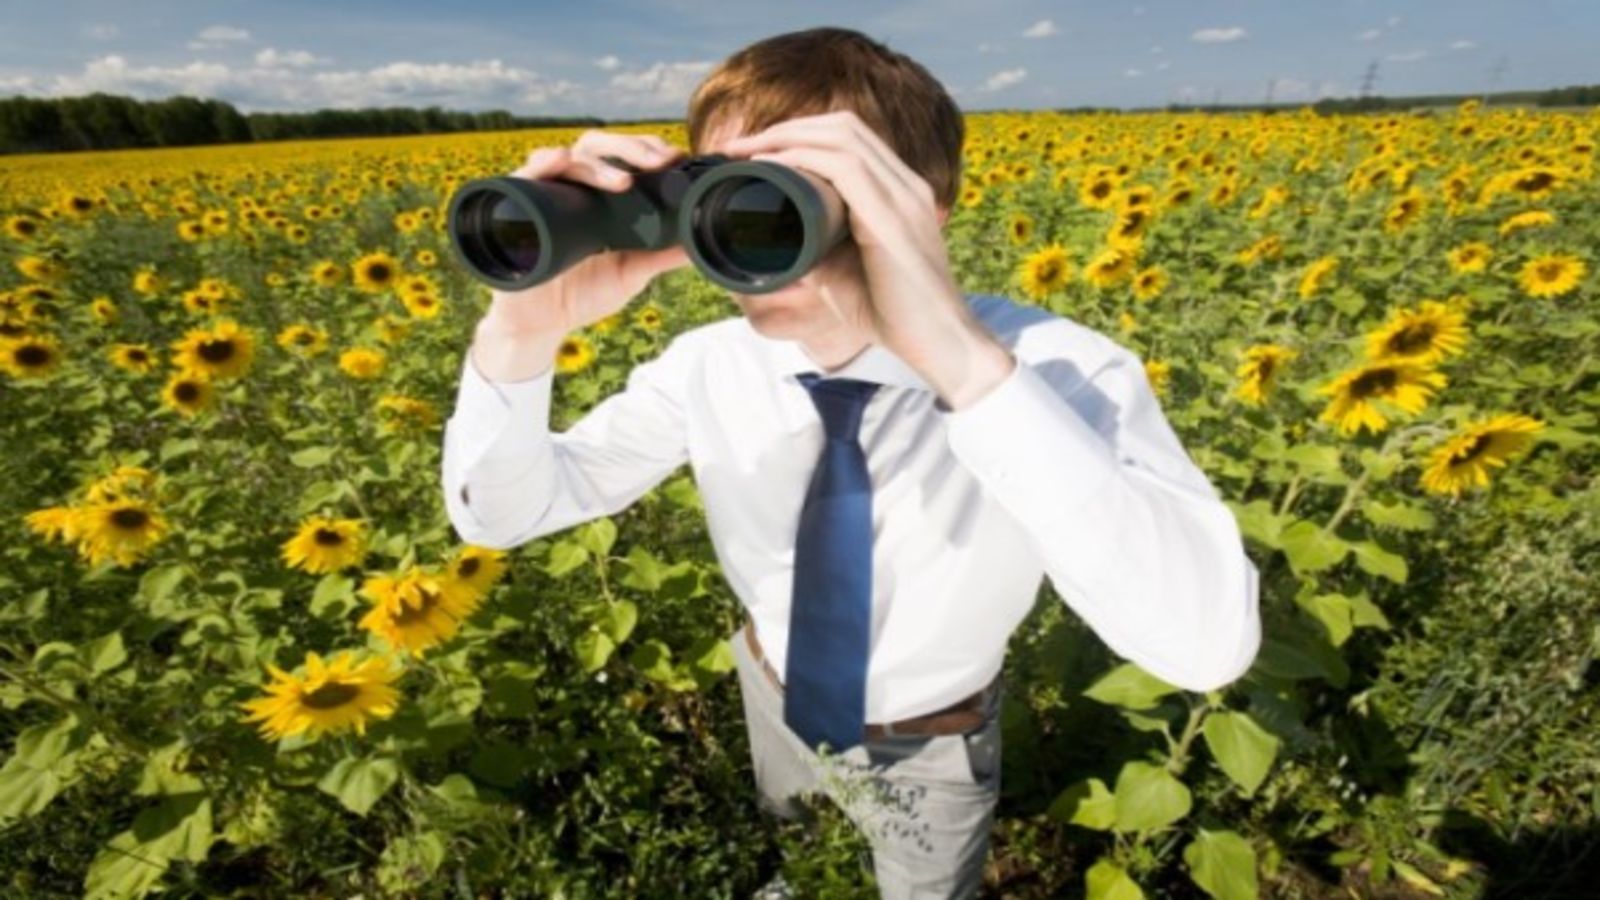 Mann mit Fernglas im Sonnenblumenfeld 